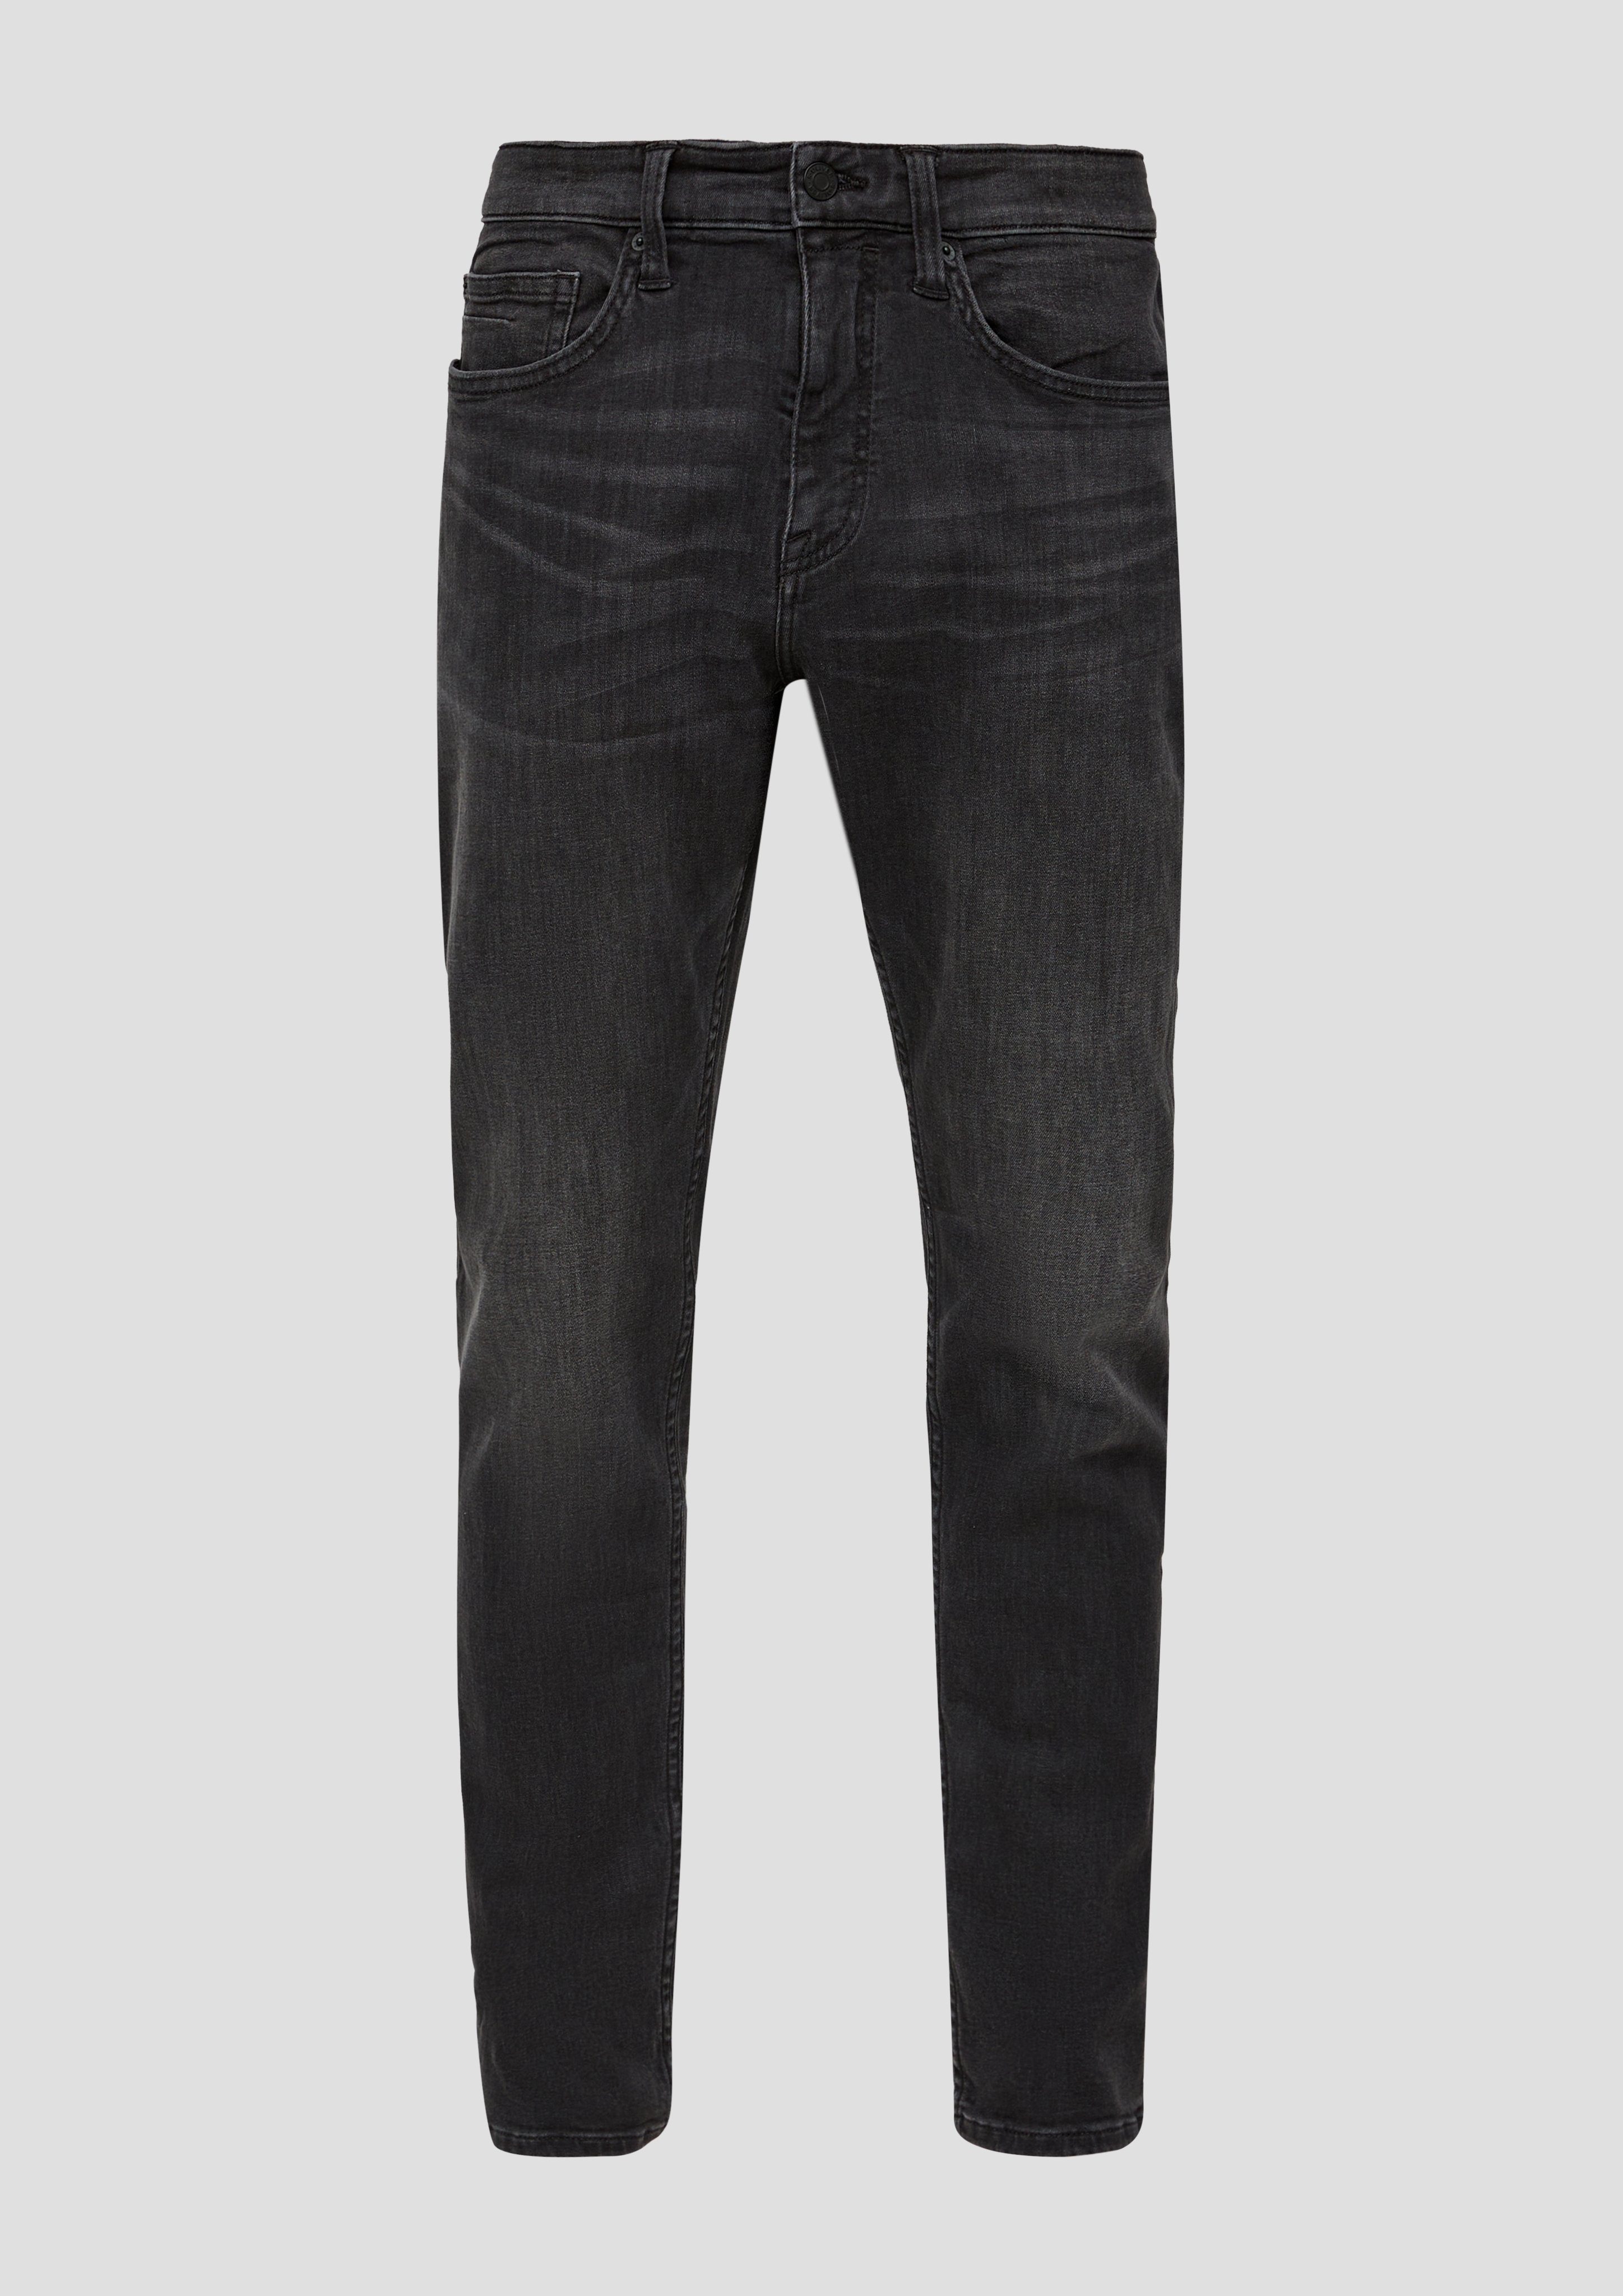 geradem mit grey/black32 Beinverlauf s.Oliver Bequeme Jeans